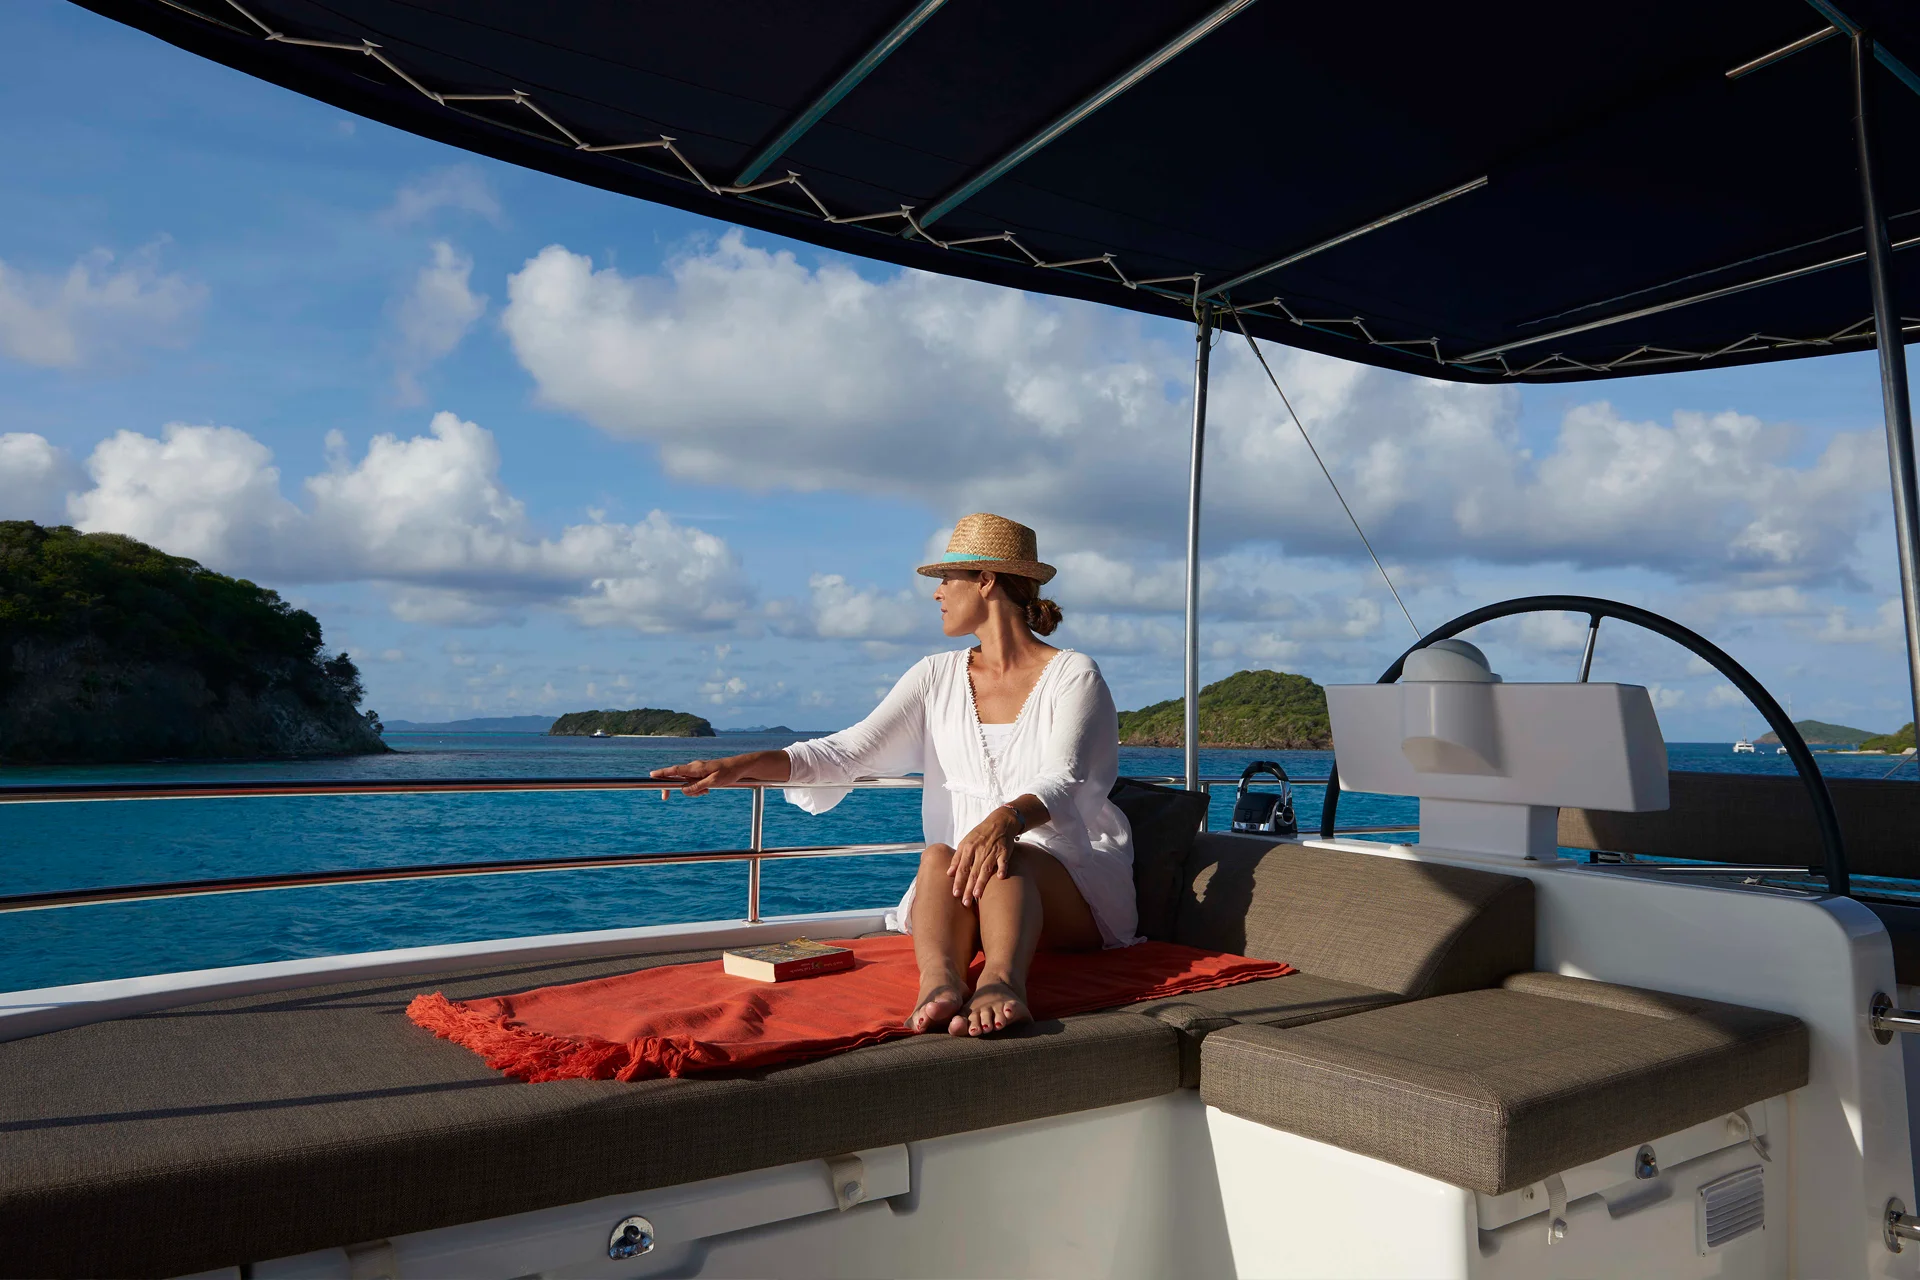 Gasten genieten van zeilen in een bemande jachtcharter in de buurt van enkele eilanden